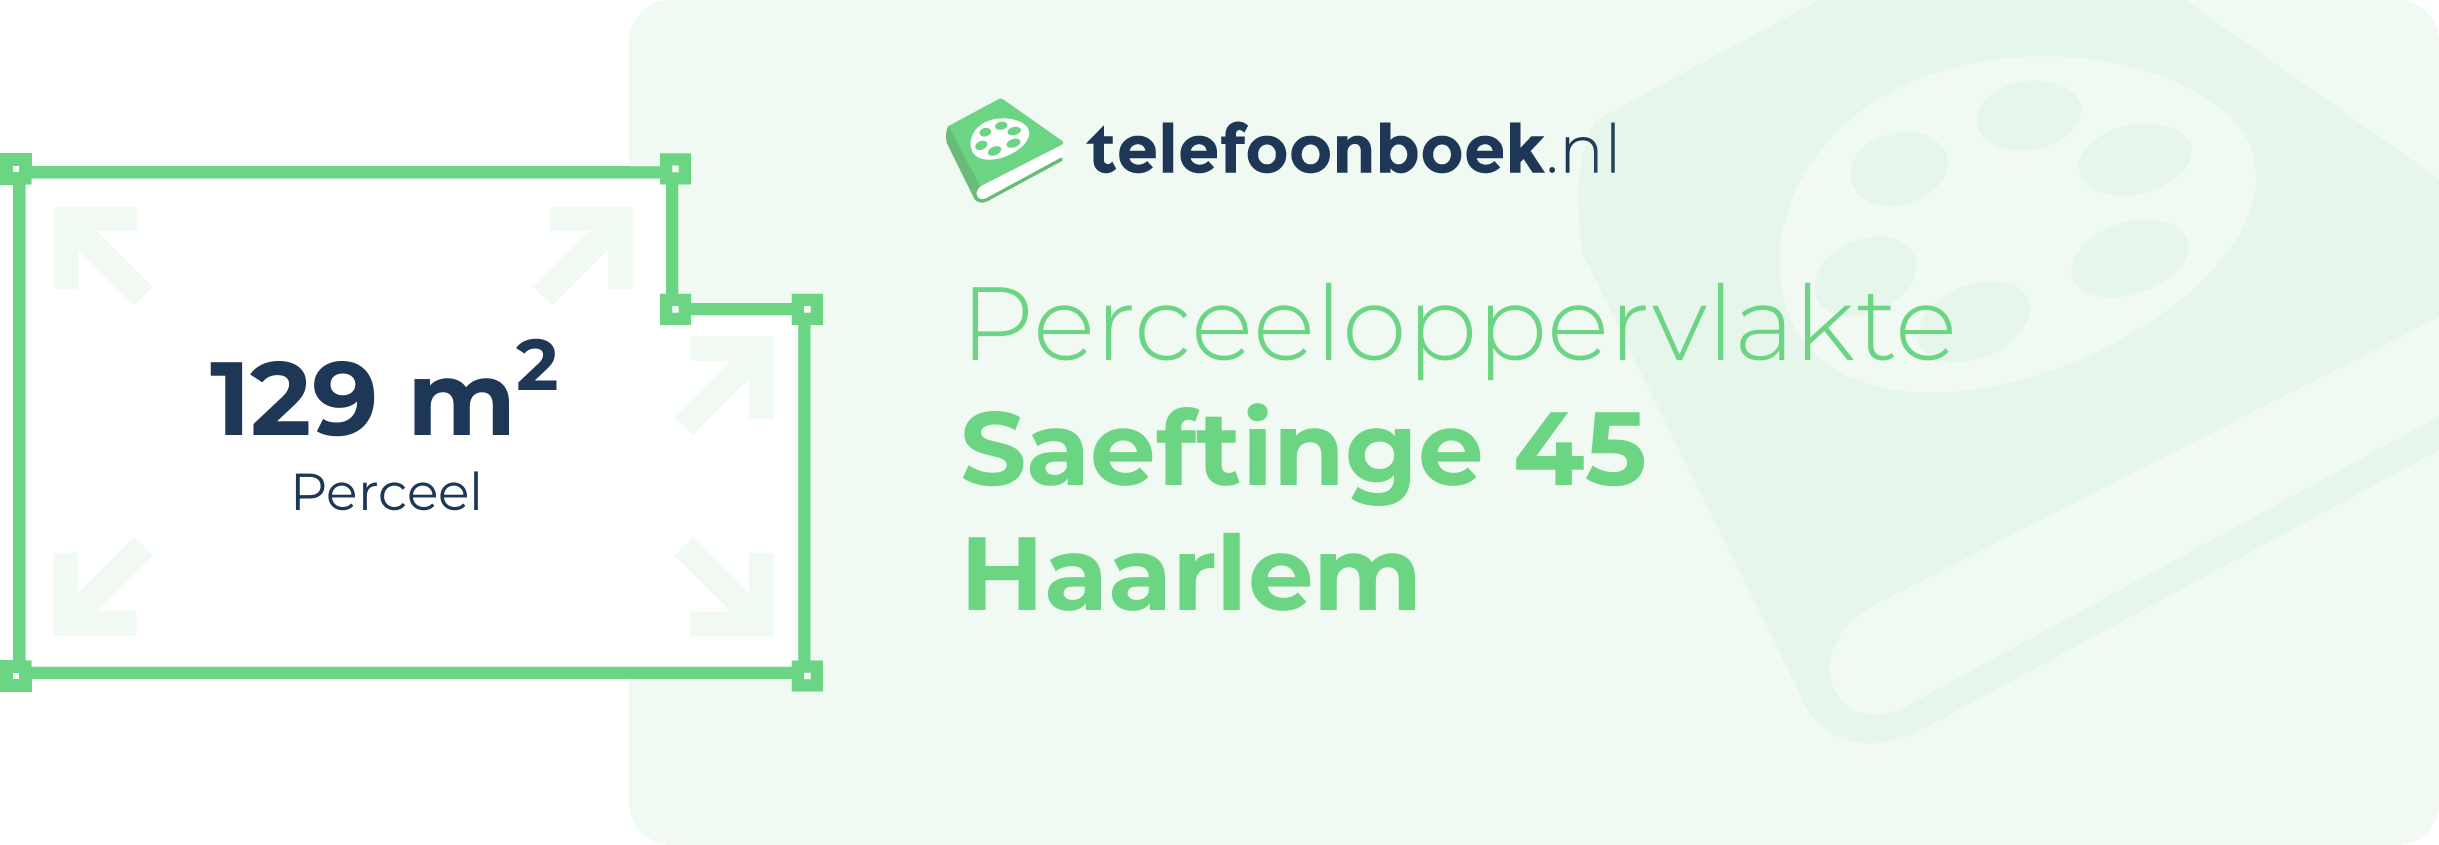 Perceeloppervlakte Saeftinge 45 Haarlem